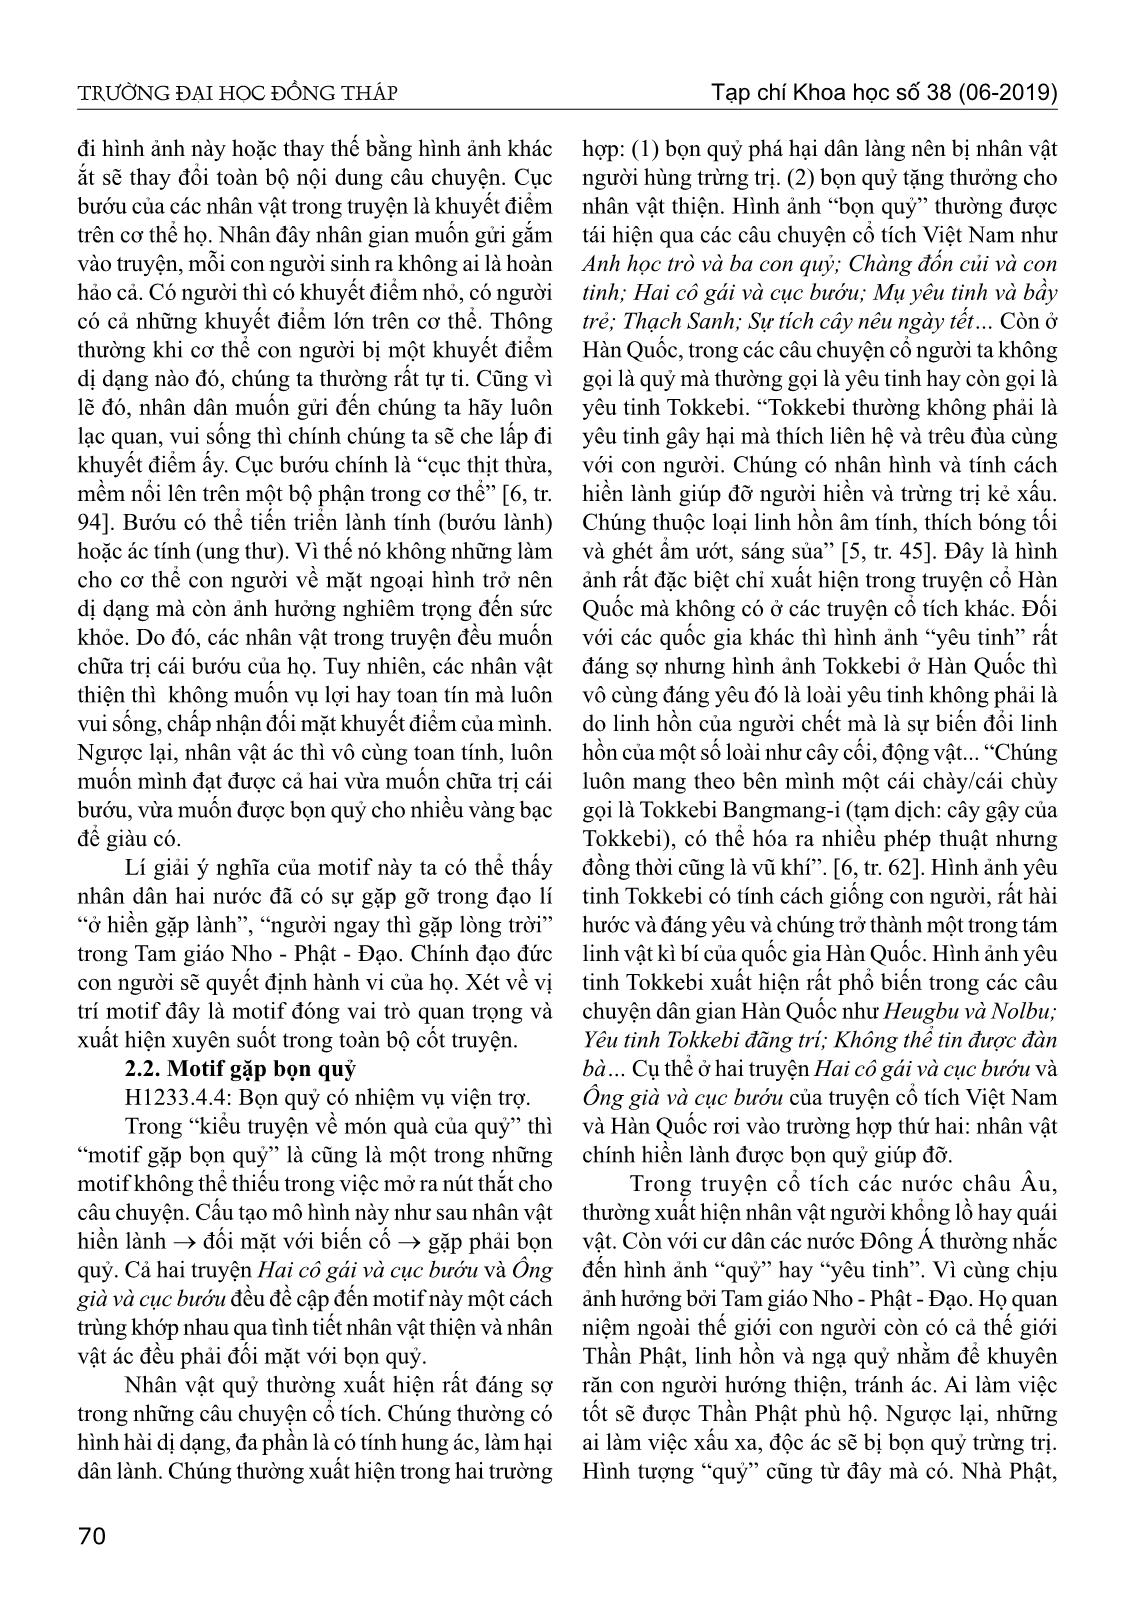 Motif trong truyện cổ tích hai cô gái và cục bướu của Việt Nam và ông già và cục bướu của Hàn Quốc từ góc nhìn so sánh trang 4